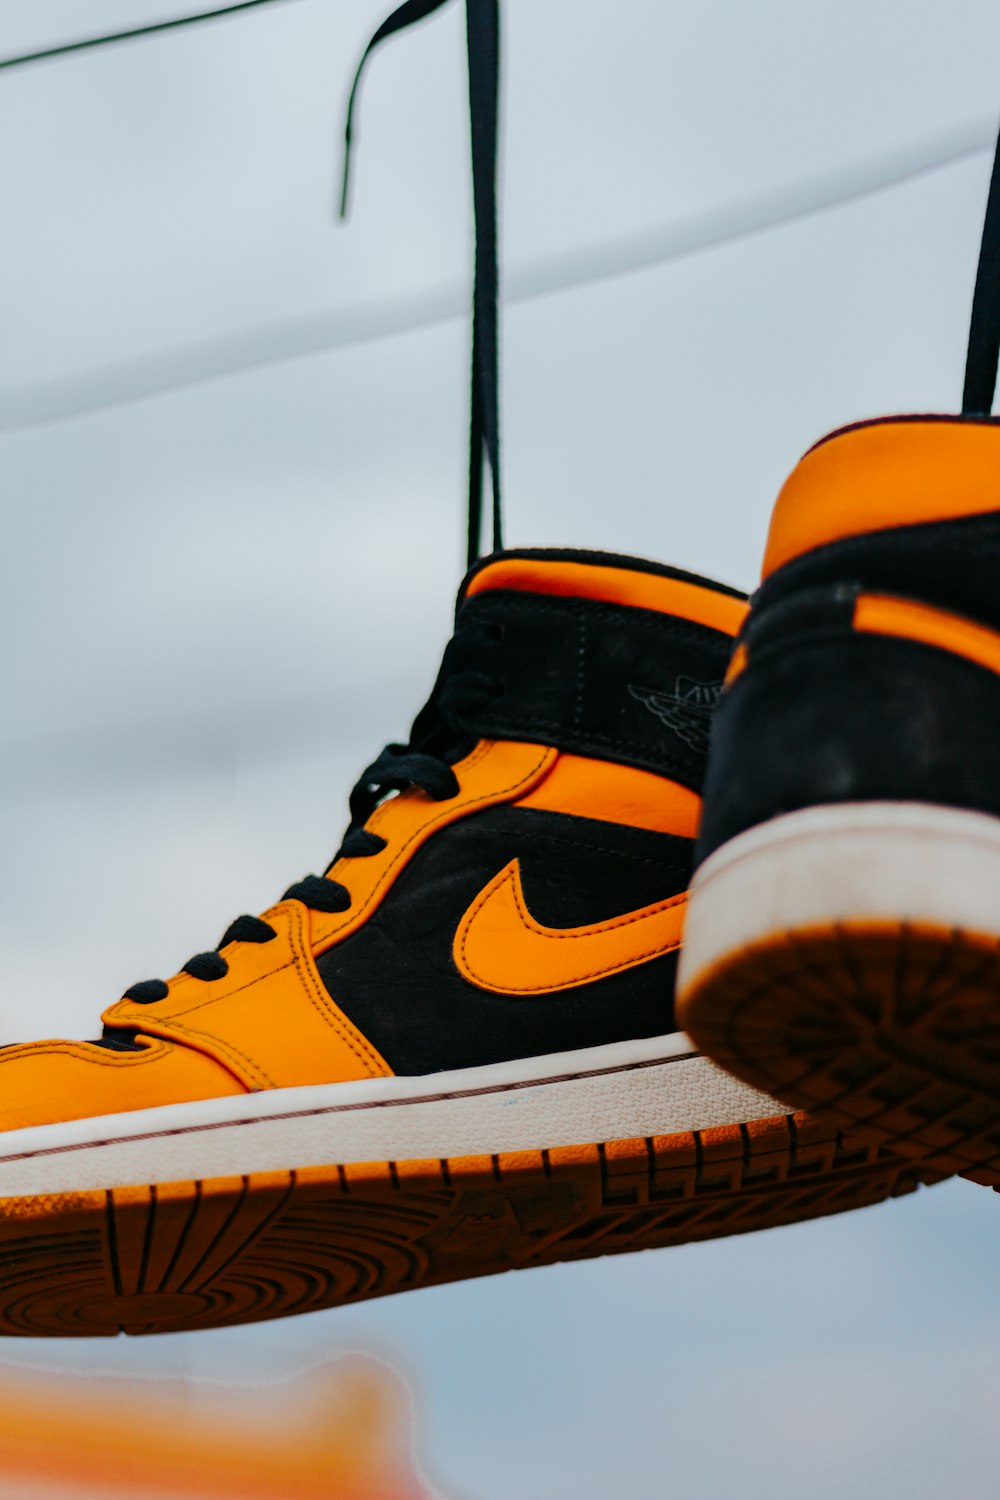 black and orange nike sneakers photo – Free Footwear Image on Unsplash